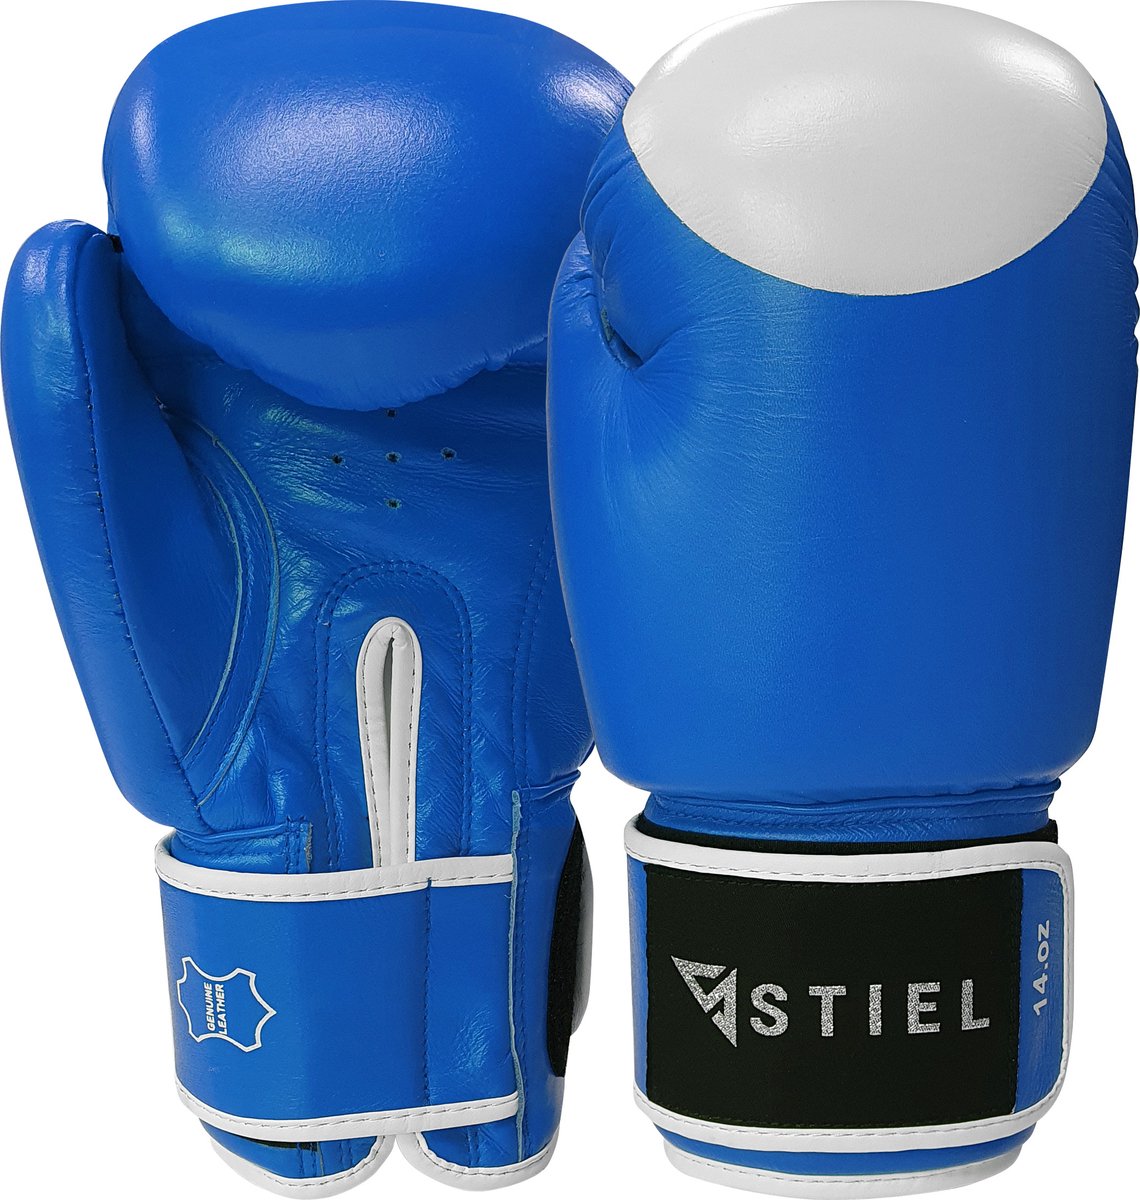 Stiel Pro Boxing Bokshandschoenen - met target - Blauw - 12 oz.